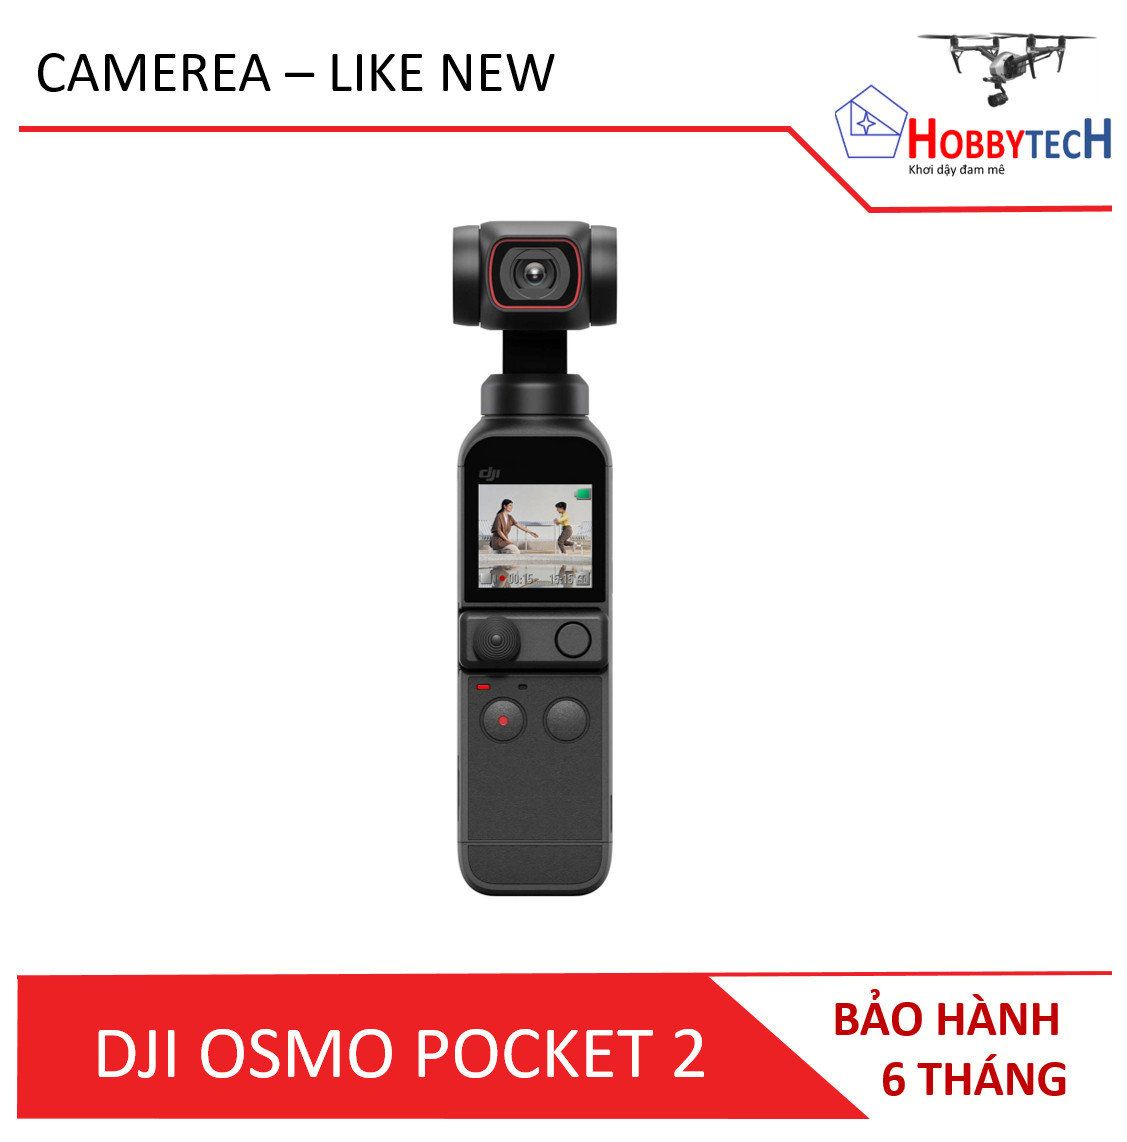 Osmo Pocket 2 cũ (Like New) – Chính hãng DJI